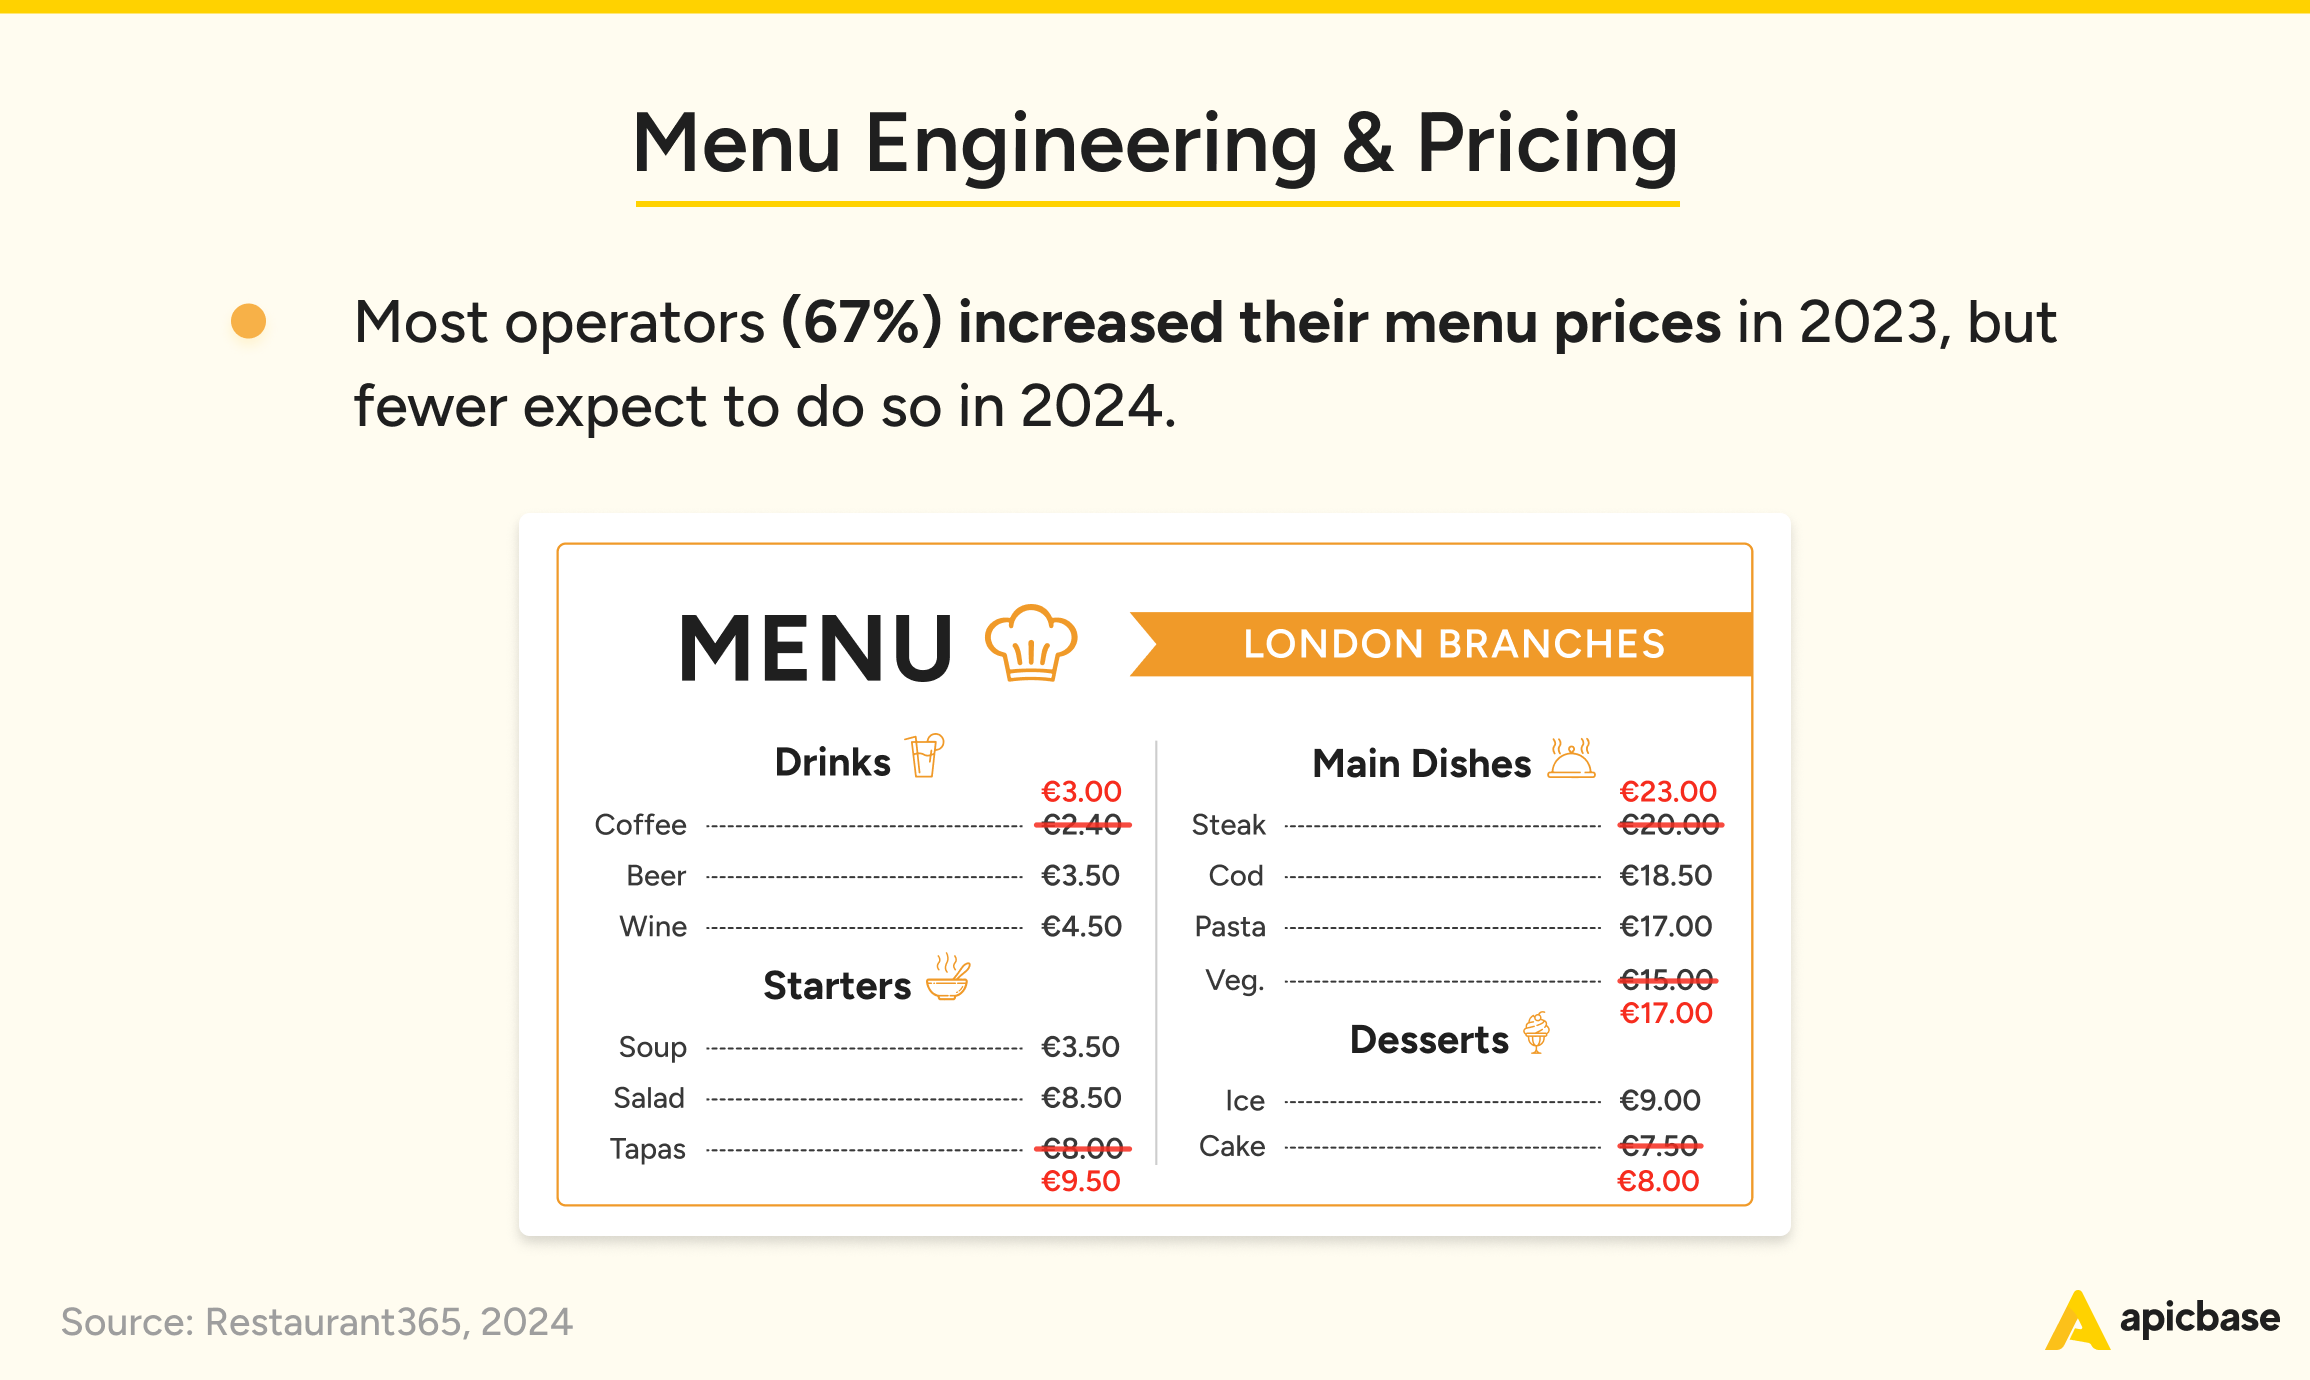 Statistieken over prijzen en menu-engineering